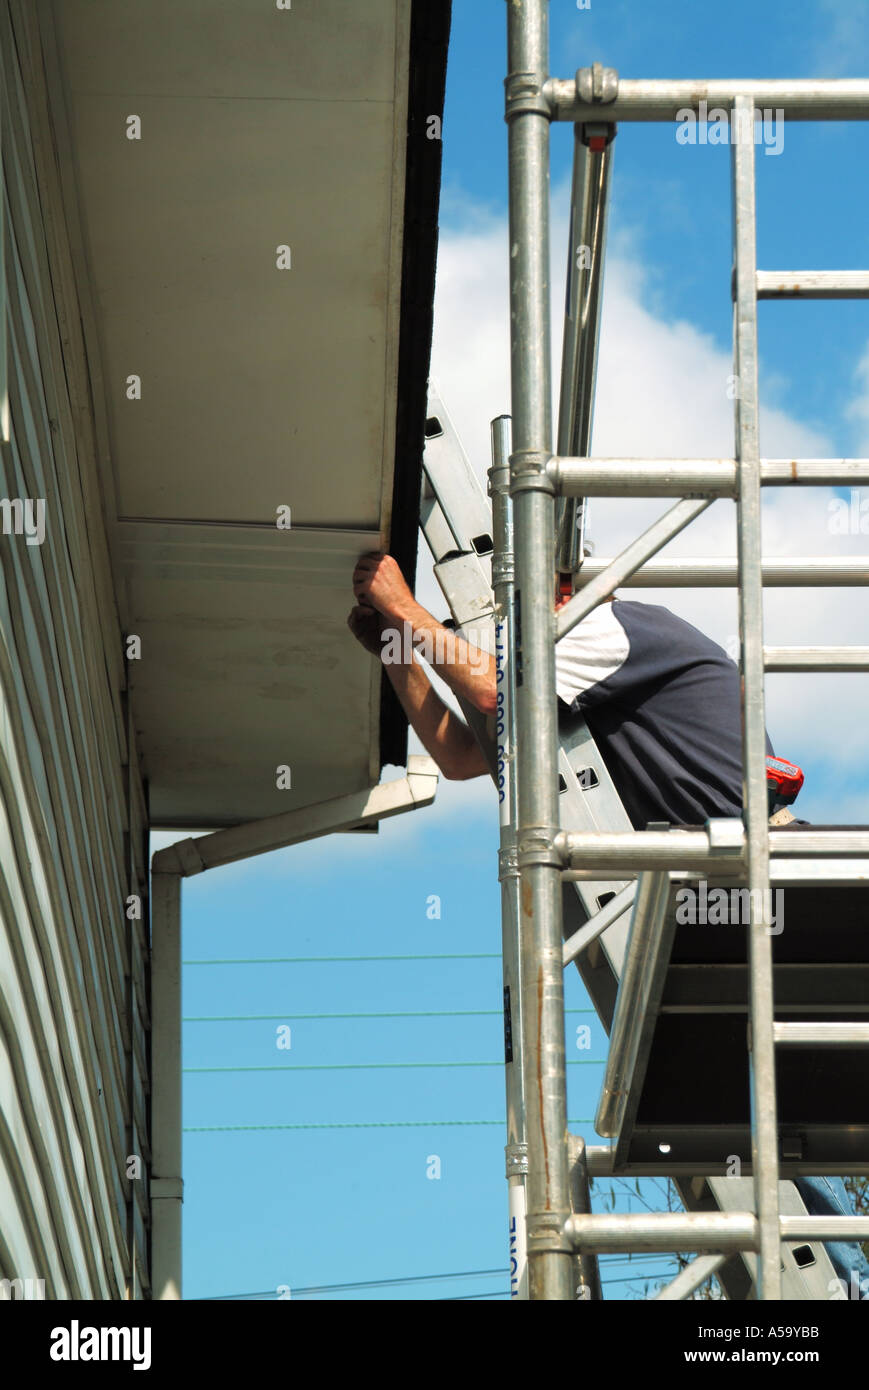 Menuisier travaillant à partir d'une tour d'accès en aluminium en installant un nouveau UPVC en plastique Sur-revêtement à l'eaves existant soffit board fascia Angleterre Royaume-Uni Banque D'Images